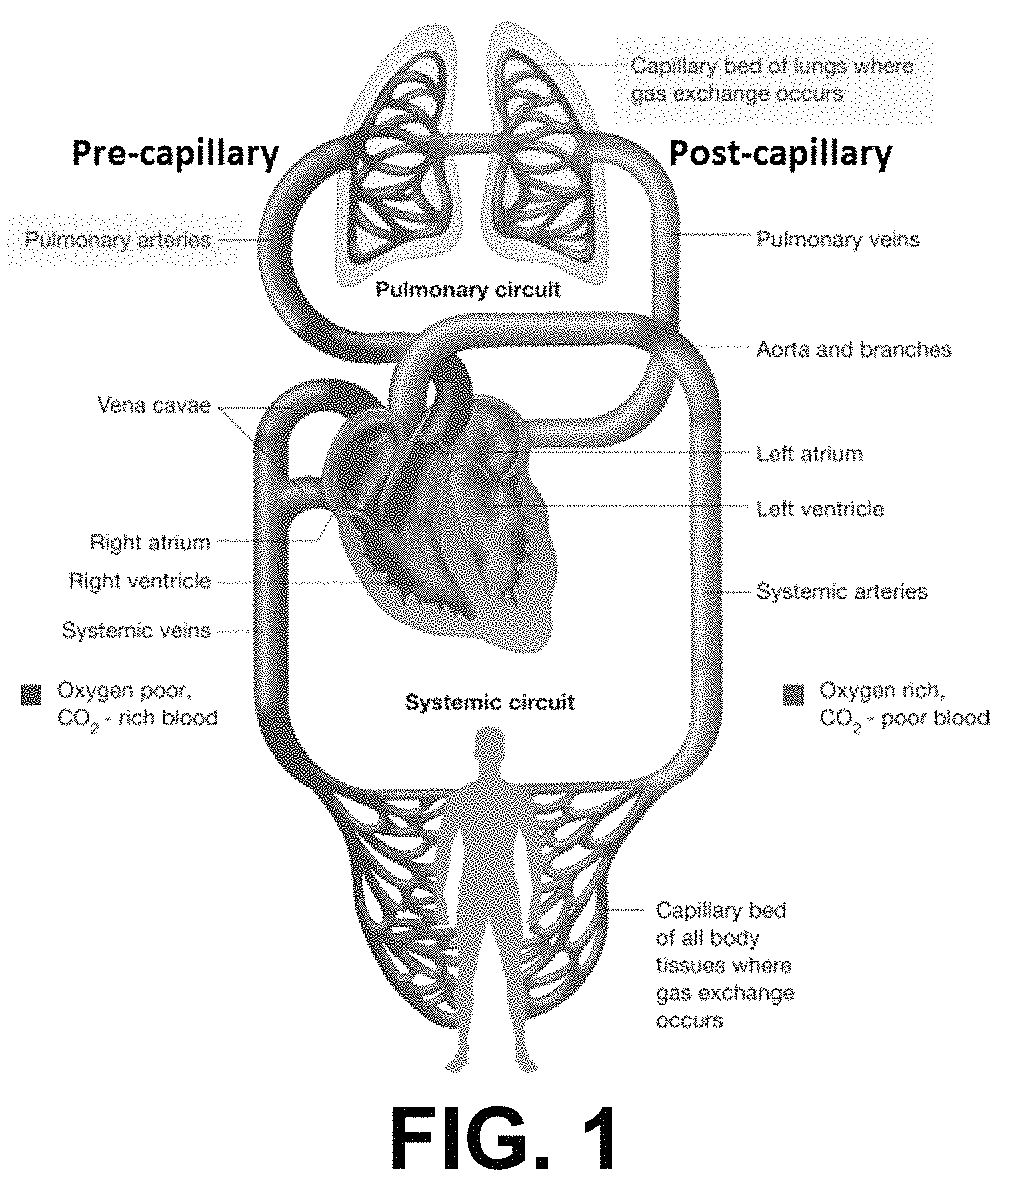 Methods for treatment of pulmonary hypertension